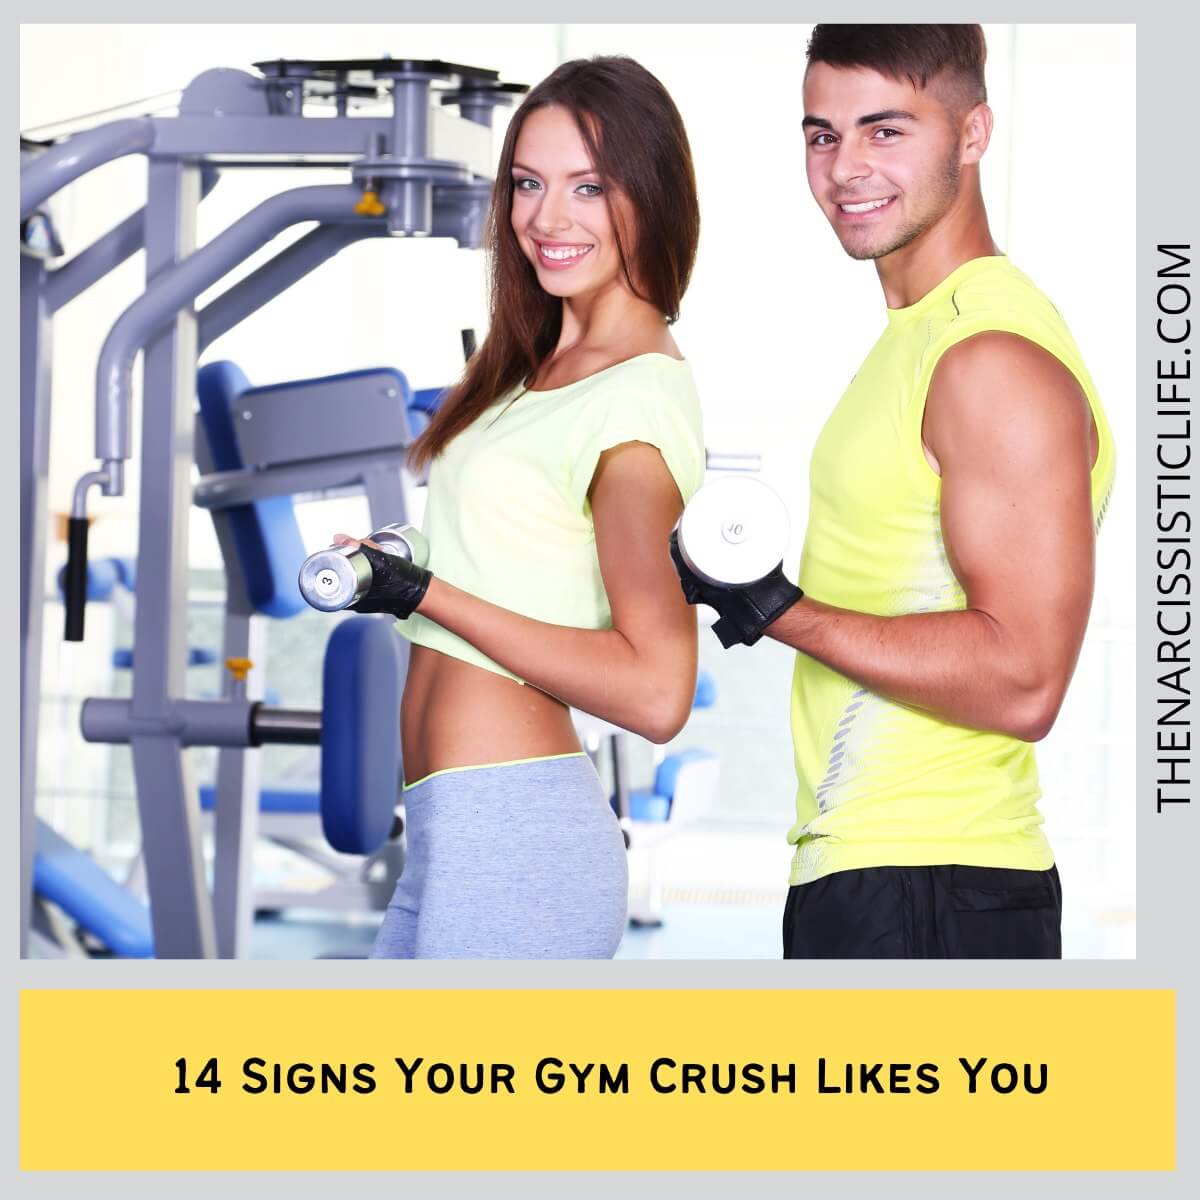 Gym Crush жаттығу залындағы тартымдылық белгілерін декодтауда (қызығу)